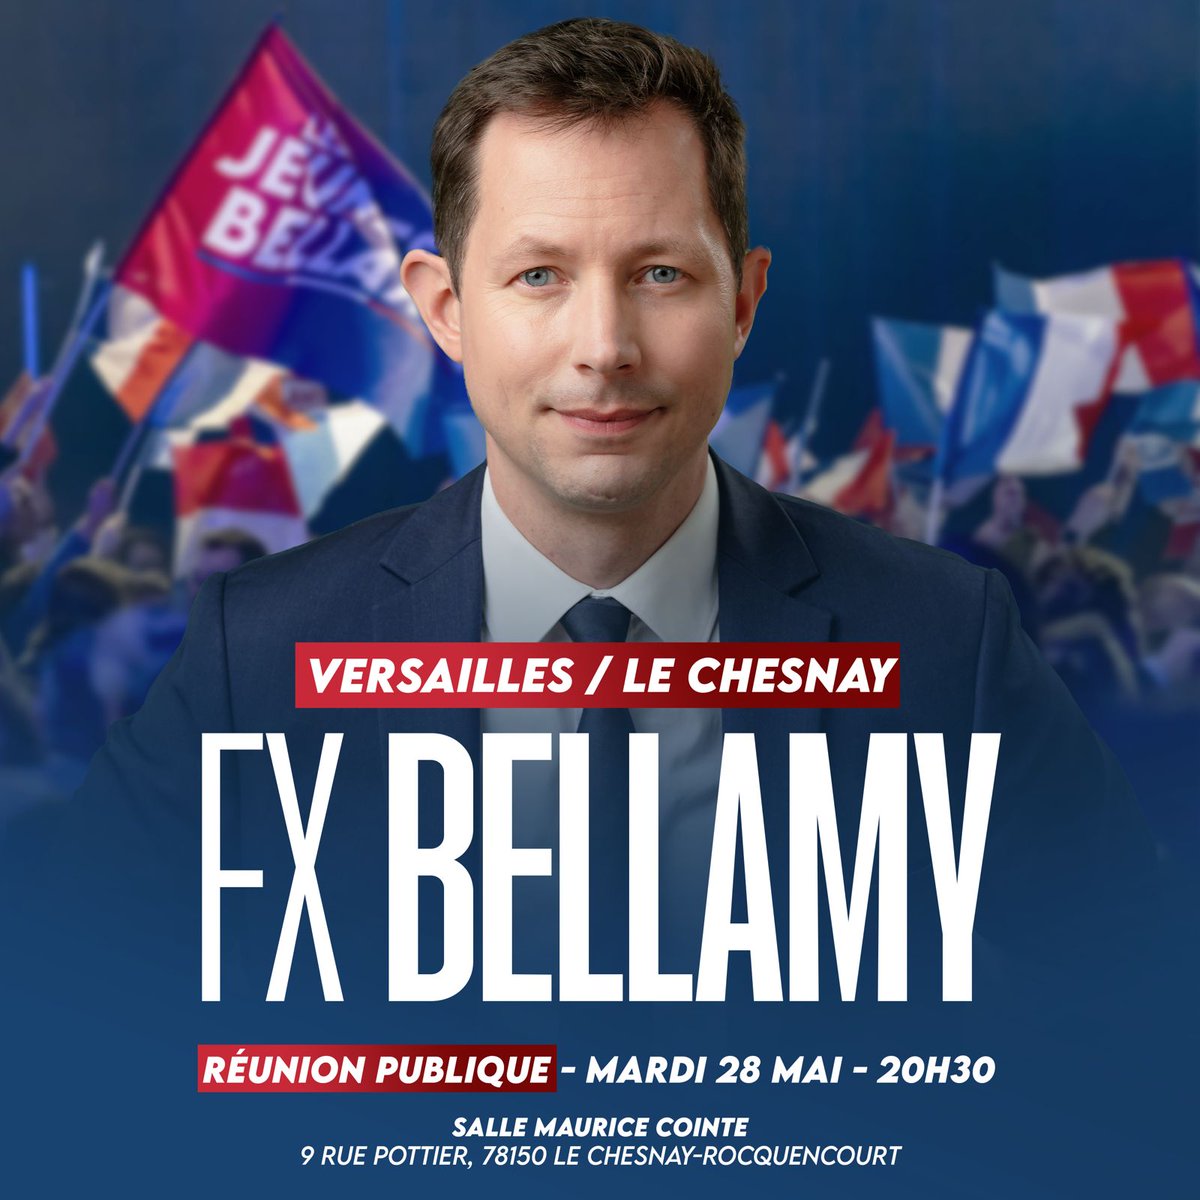 Retrouvons-nous le mardi 28 mai à #Versailles ! #AvecBellamy